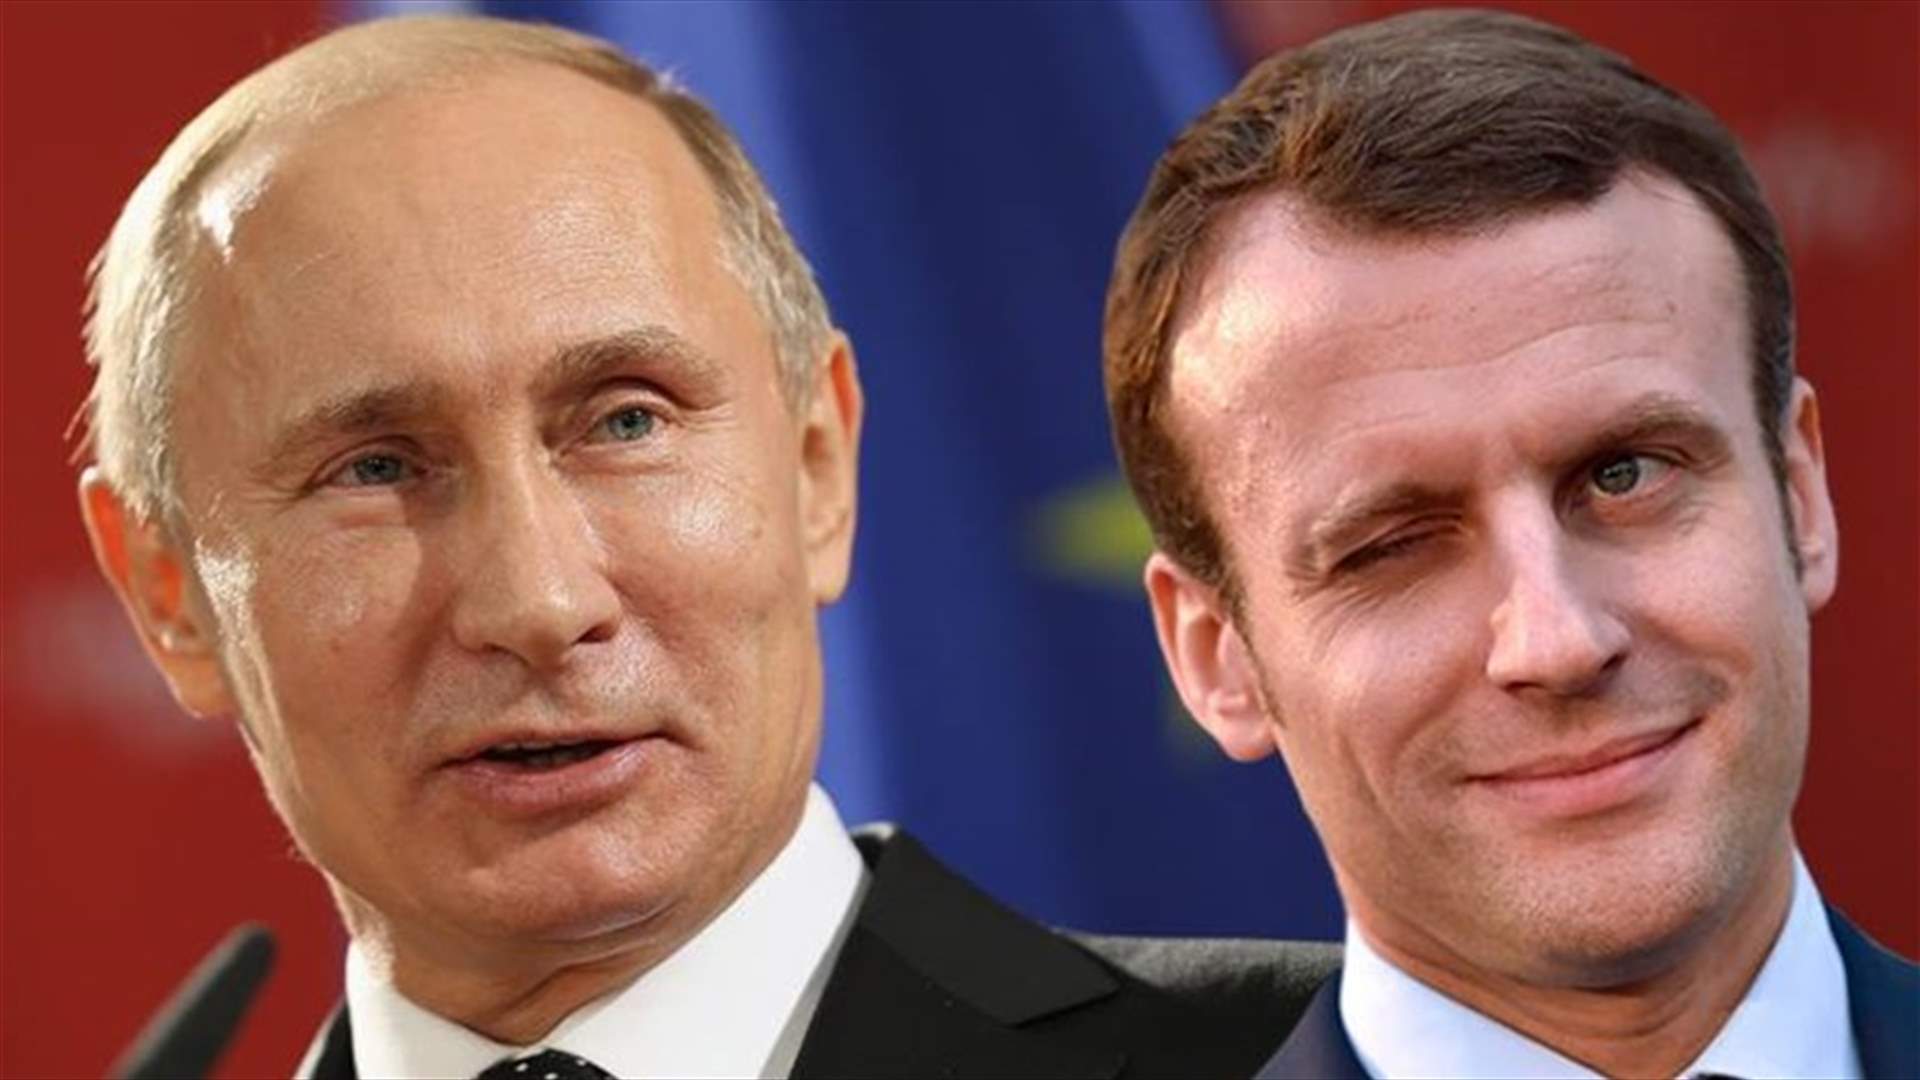 ماكرون يستقبل بوتين في قصر فرساي لعقد أول لقاء بينهما